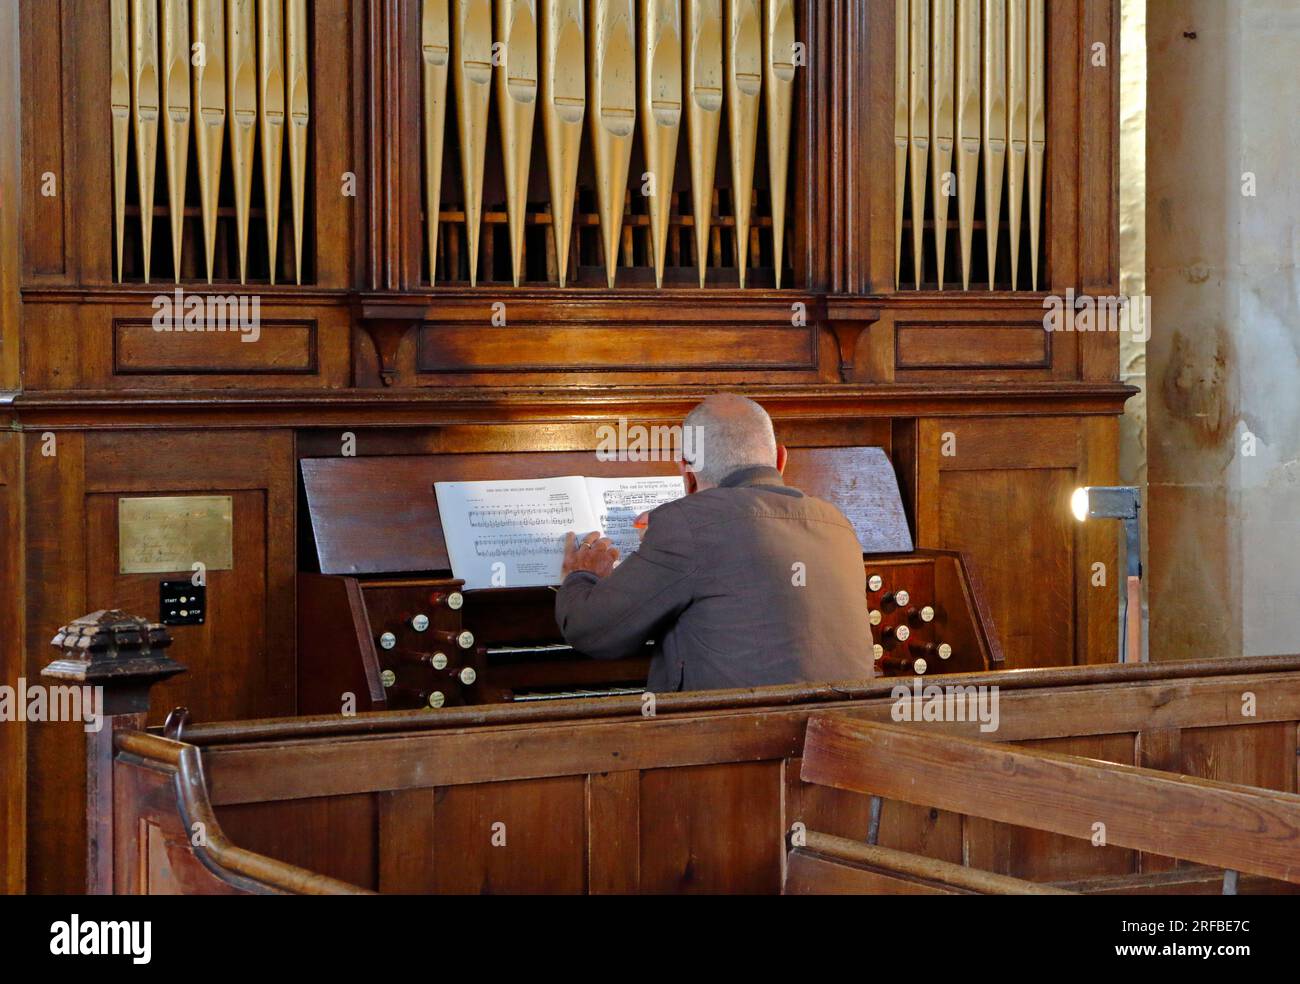 Organiste travaillant sur une partition musicale assis à l'orgue de l'église St Margaret à Cley Next the Sea, Norfolk, Angleterre, Royaume-Uni. Banque D'Images